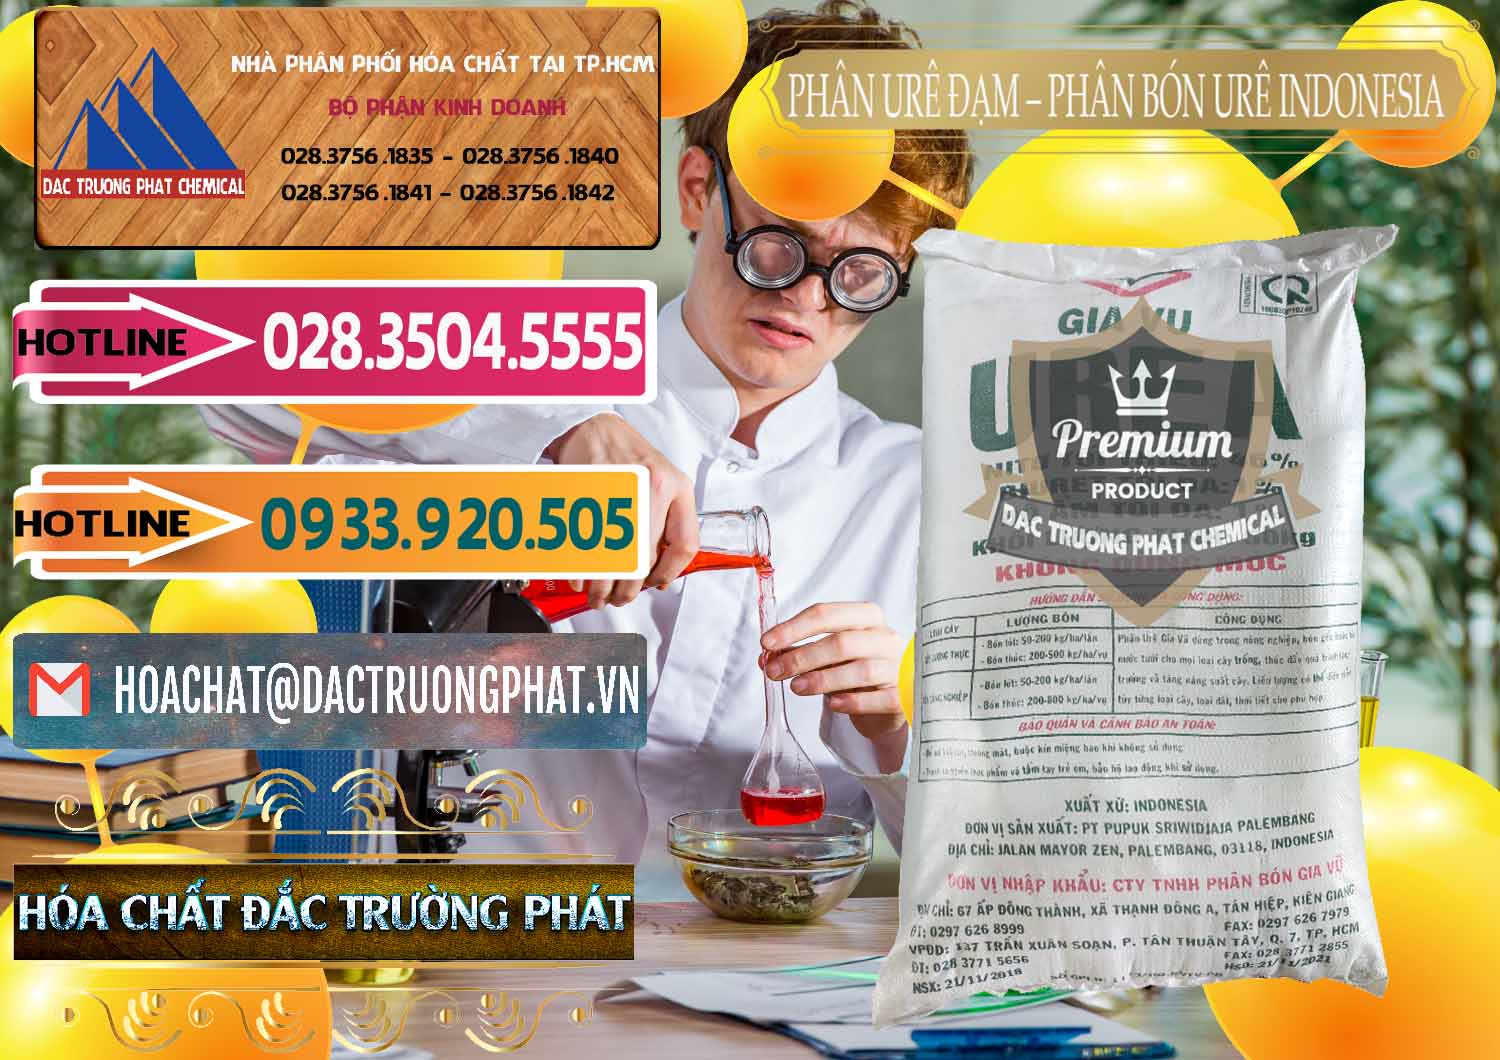 Đơn vị chuyên bán _ cung cấp Phân Urê Đạm – Phân Bón Urê Indonesia - 0194 - Phân phối & nhập khẩu hóa chất tại TP.HCM - dactruongphat.vn